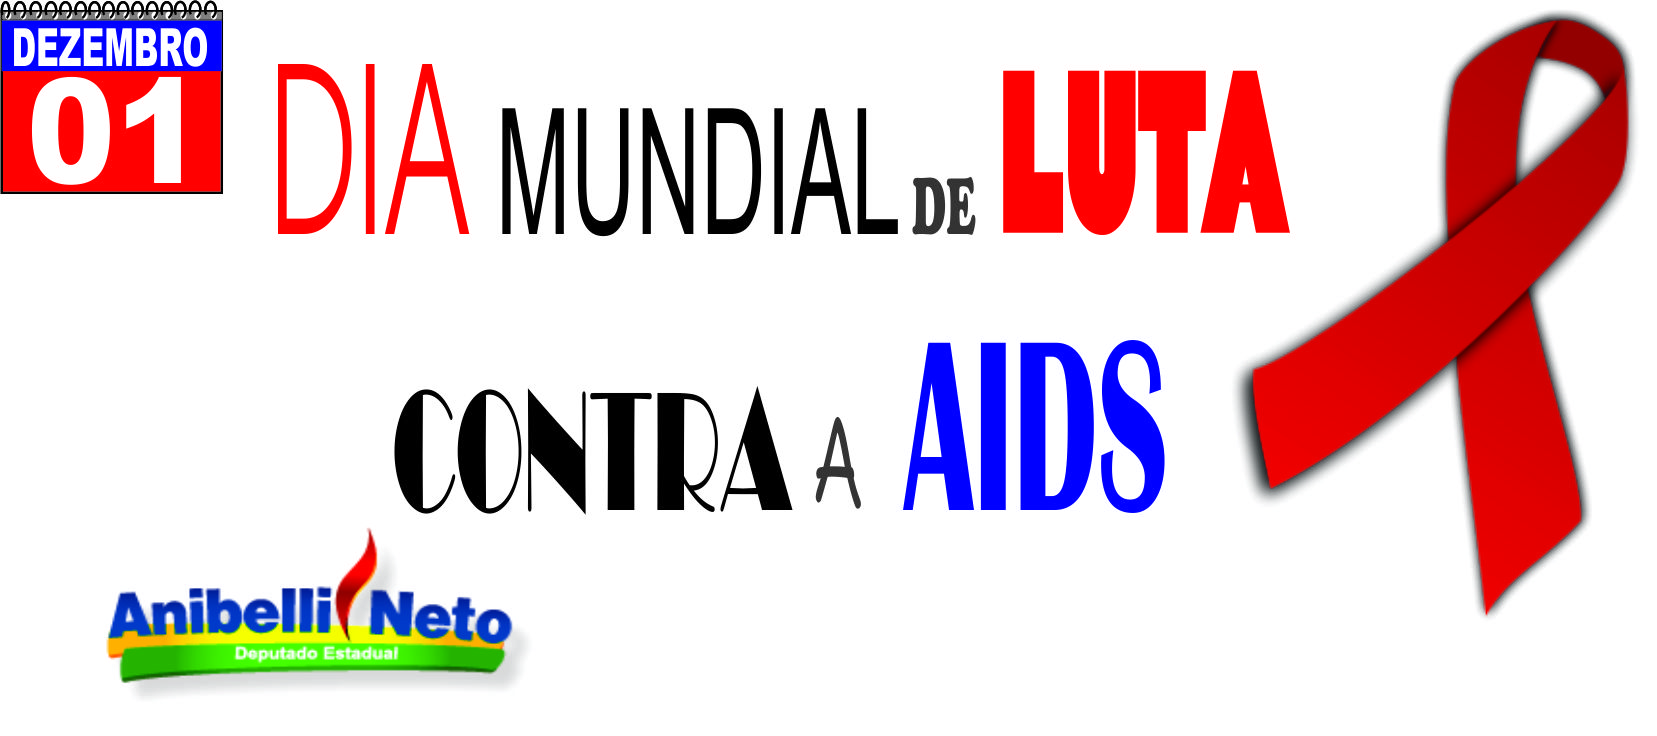 Dia Internacional da Luta contra a AIDS